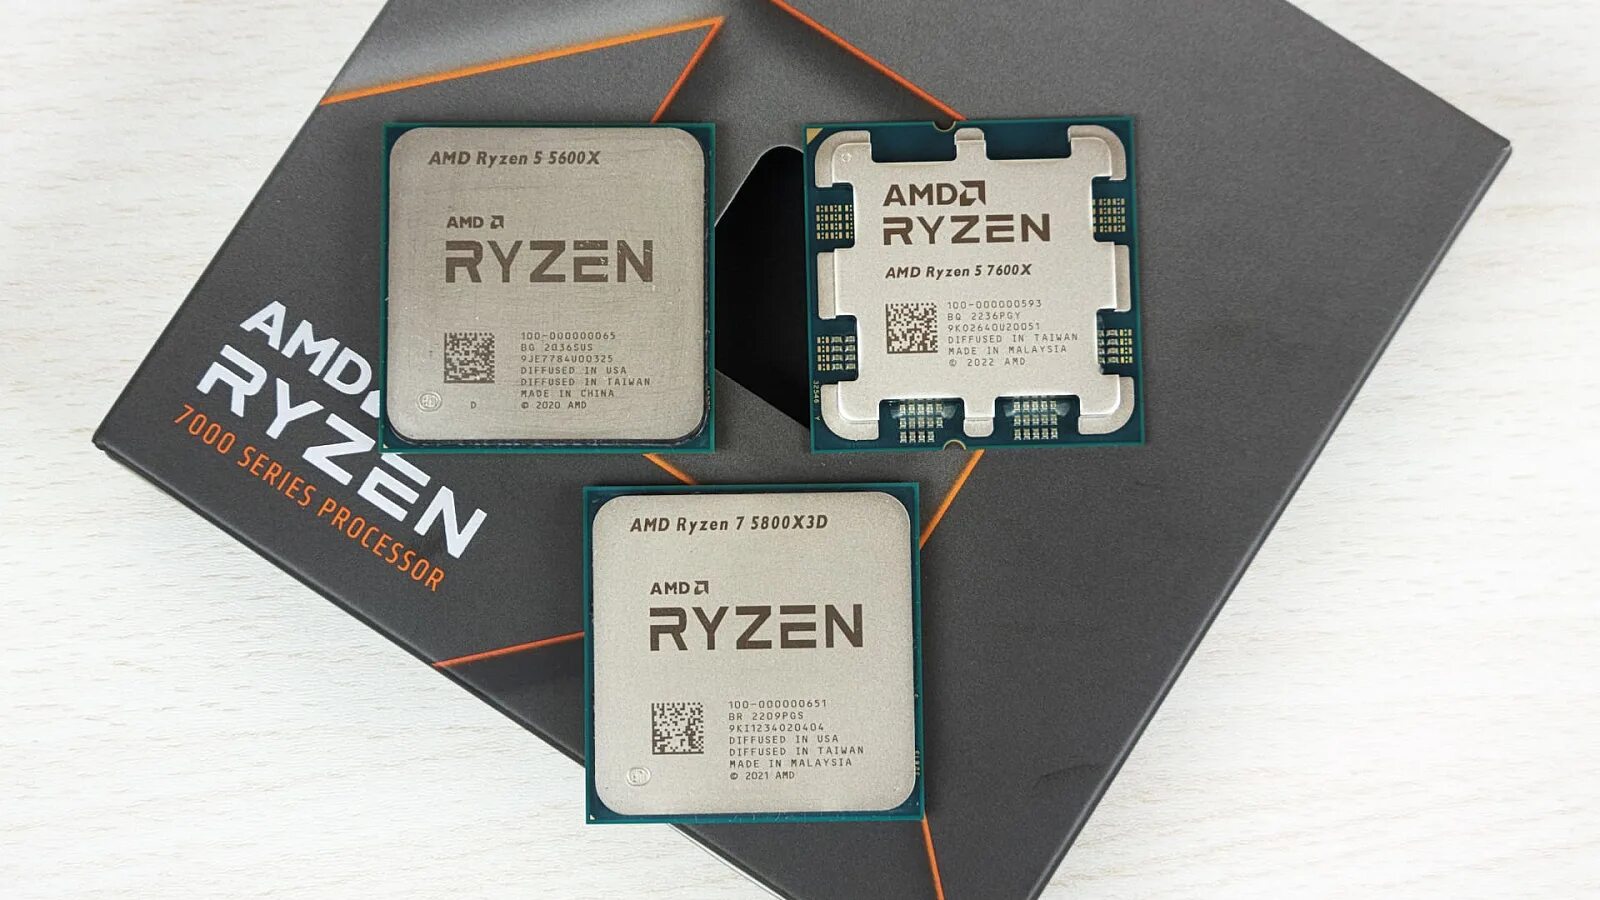 Ryzen 7600x. Ryzen 5 7600x. AMD Ryzen 5 7600x am5, 6 x 4700 МГЦ. AMD Ryzen 5 7600x 6-Core Processor 4.70 GHZ.